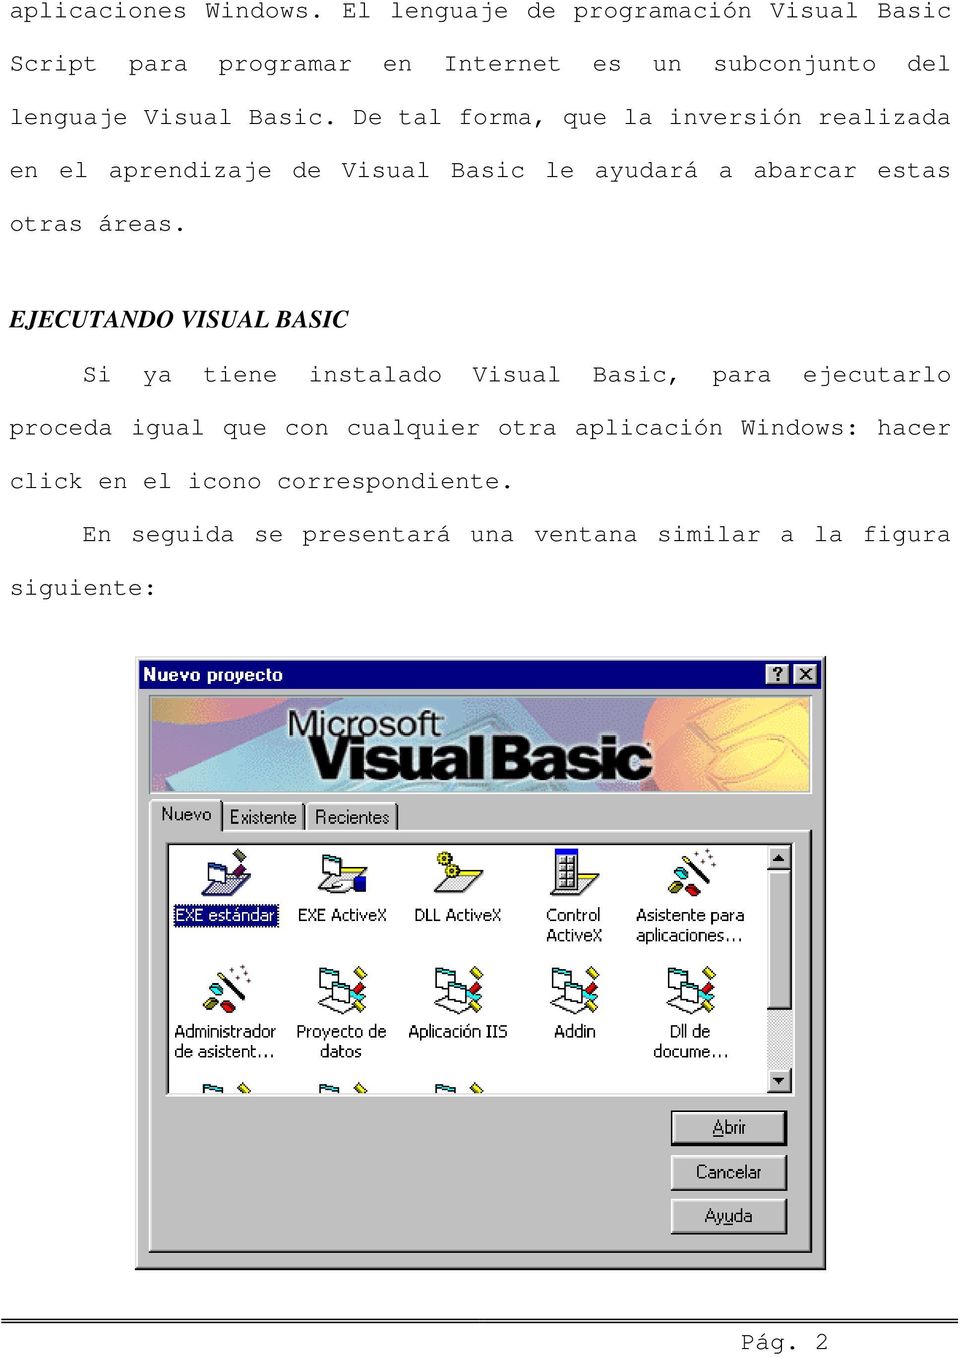 De tal forma, que la inversión realizada en el aprendizaje de Visual Basic le ayudará a abarcar estas otras áreas.